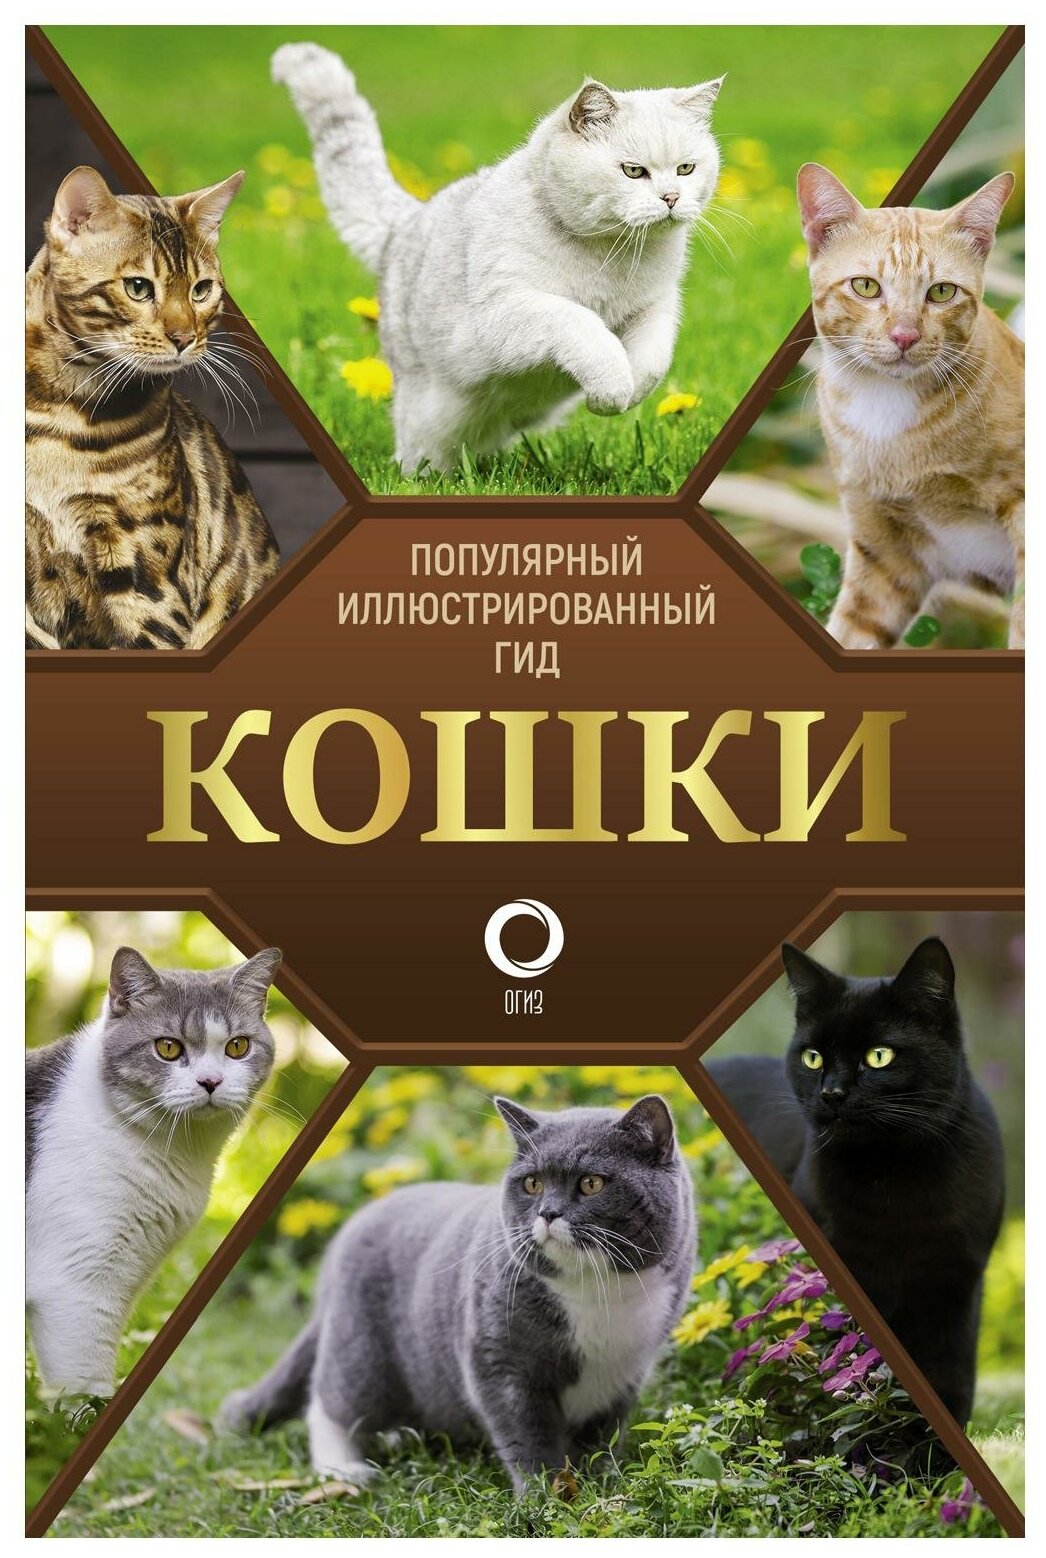 Кошки (Непомнящий Николай Николаевич) - фото №1